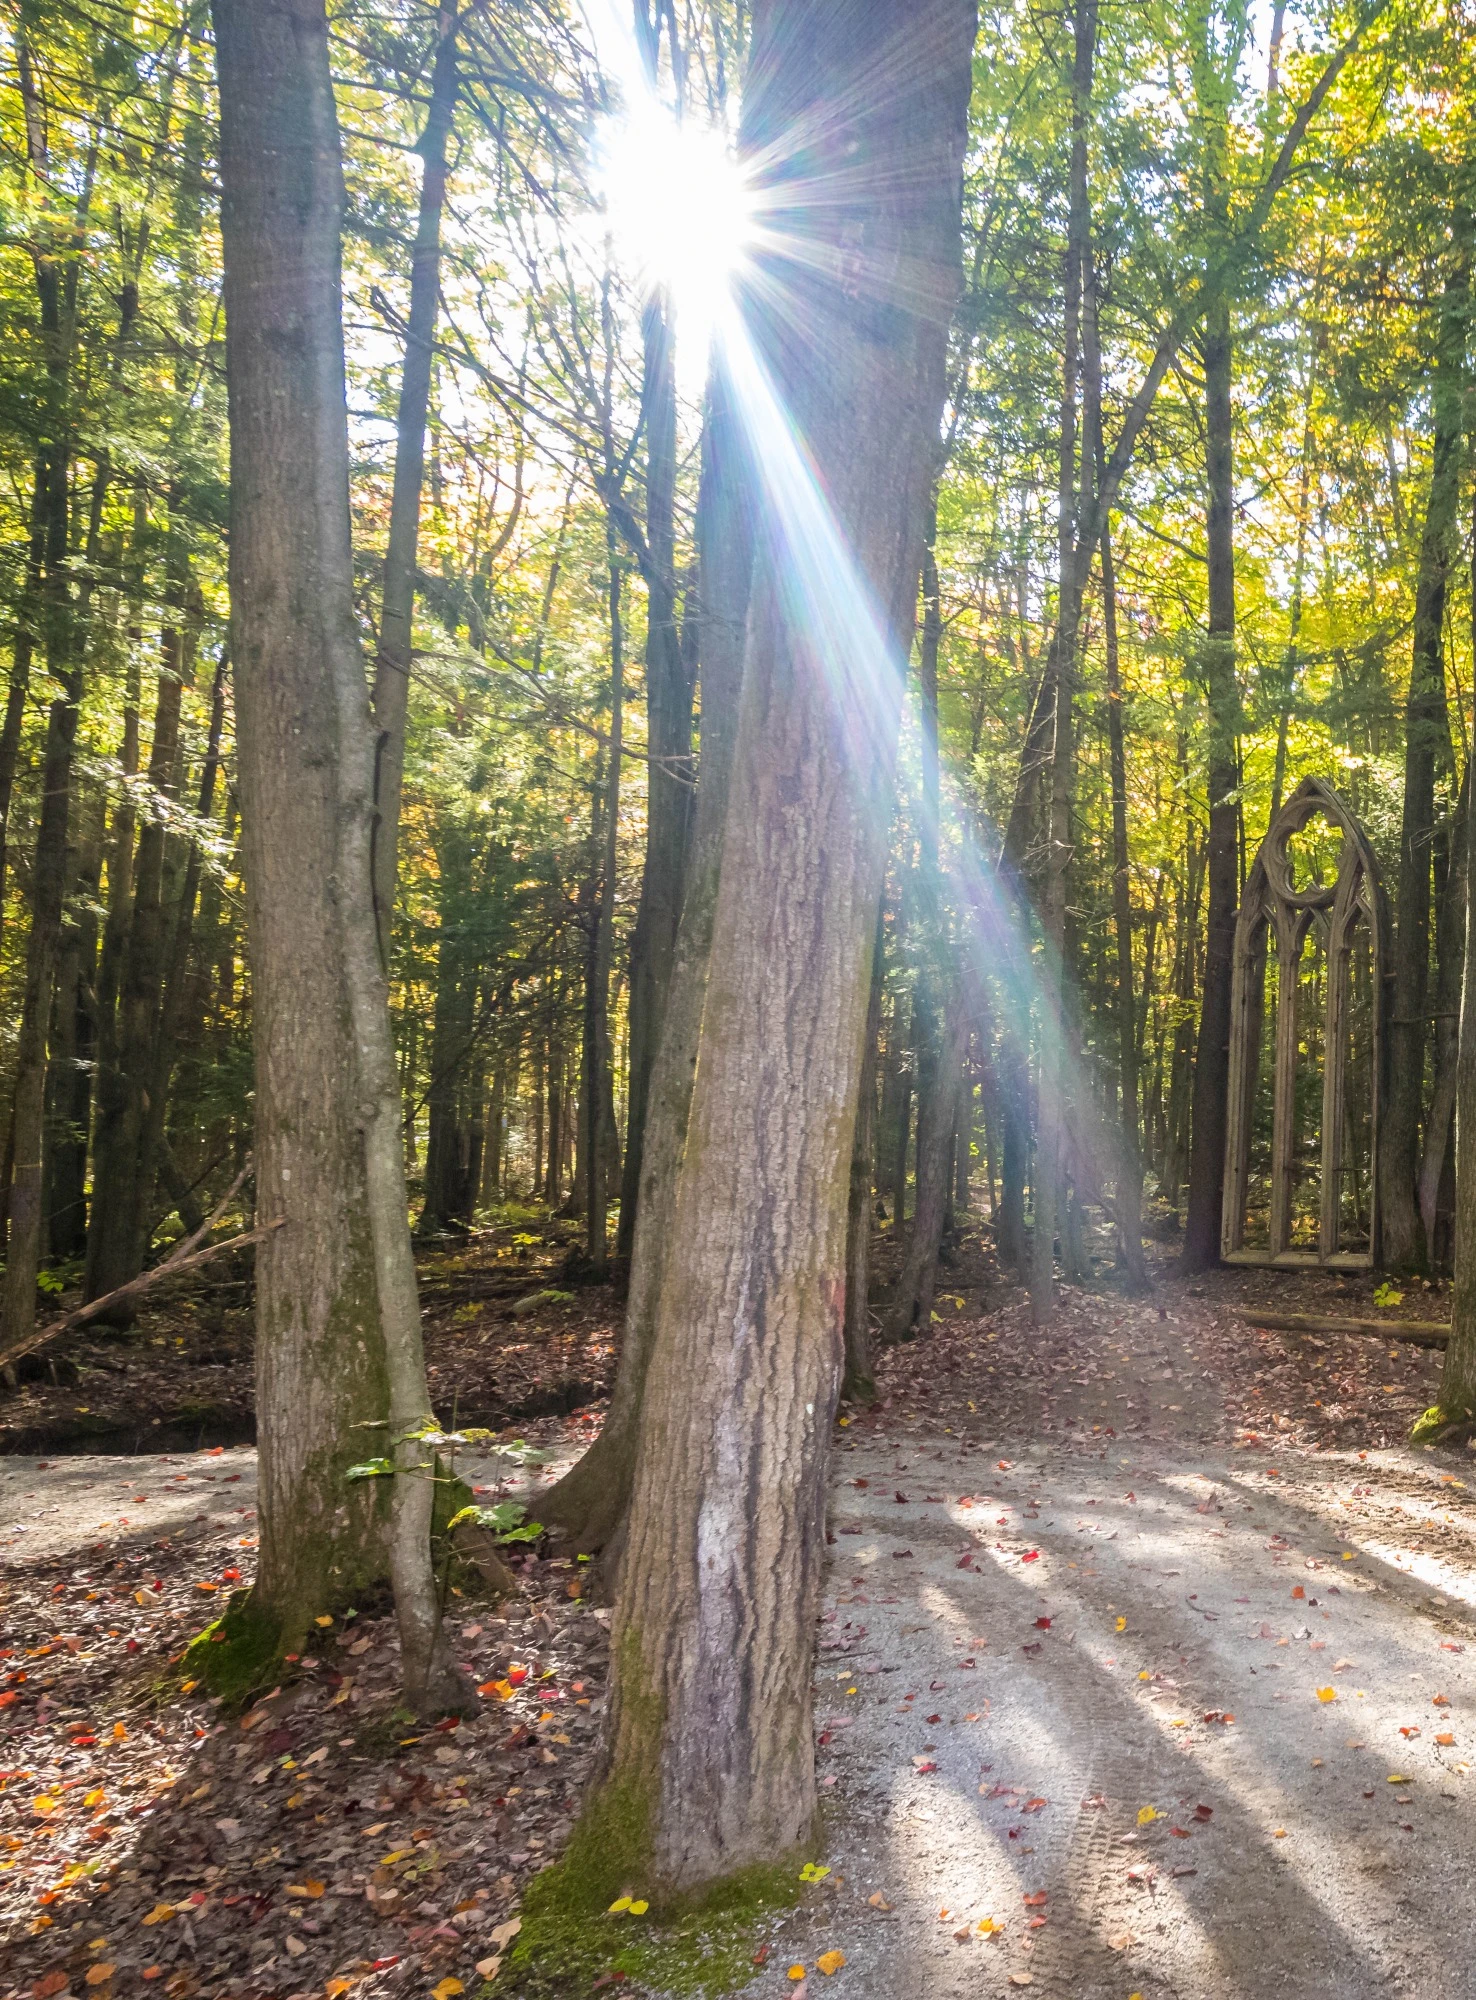 Le soleil qui traverse les arbres au milieu de la forêt sur un sentier pédestre en hiver.